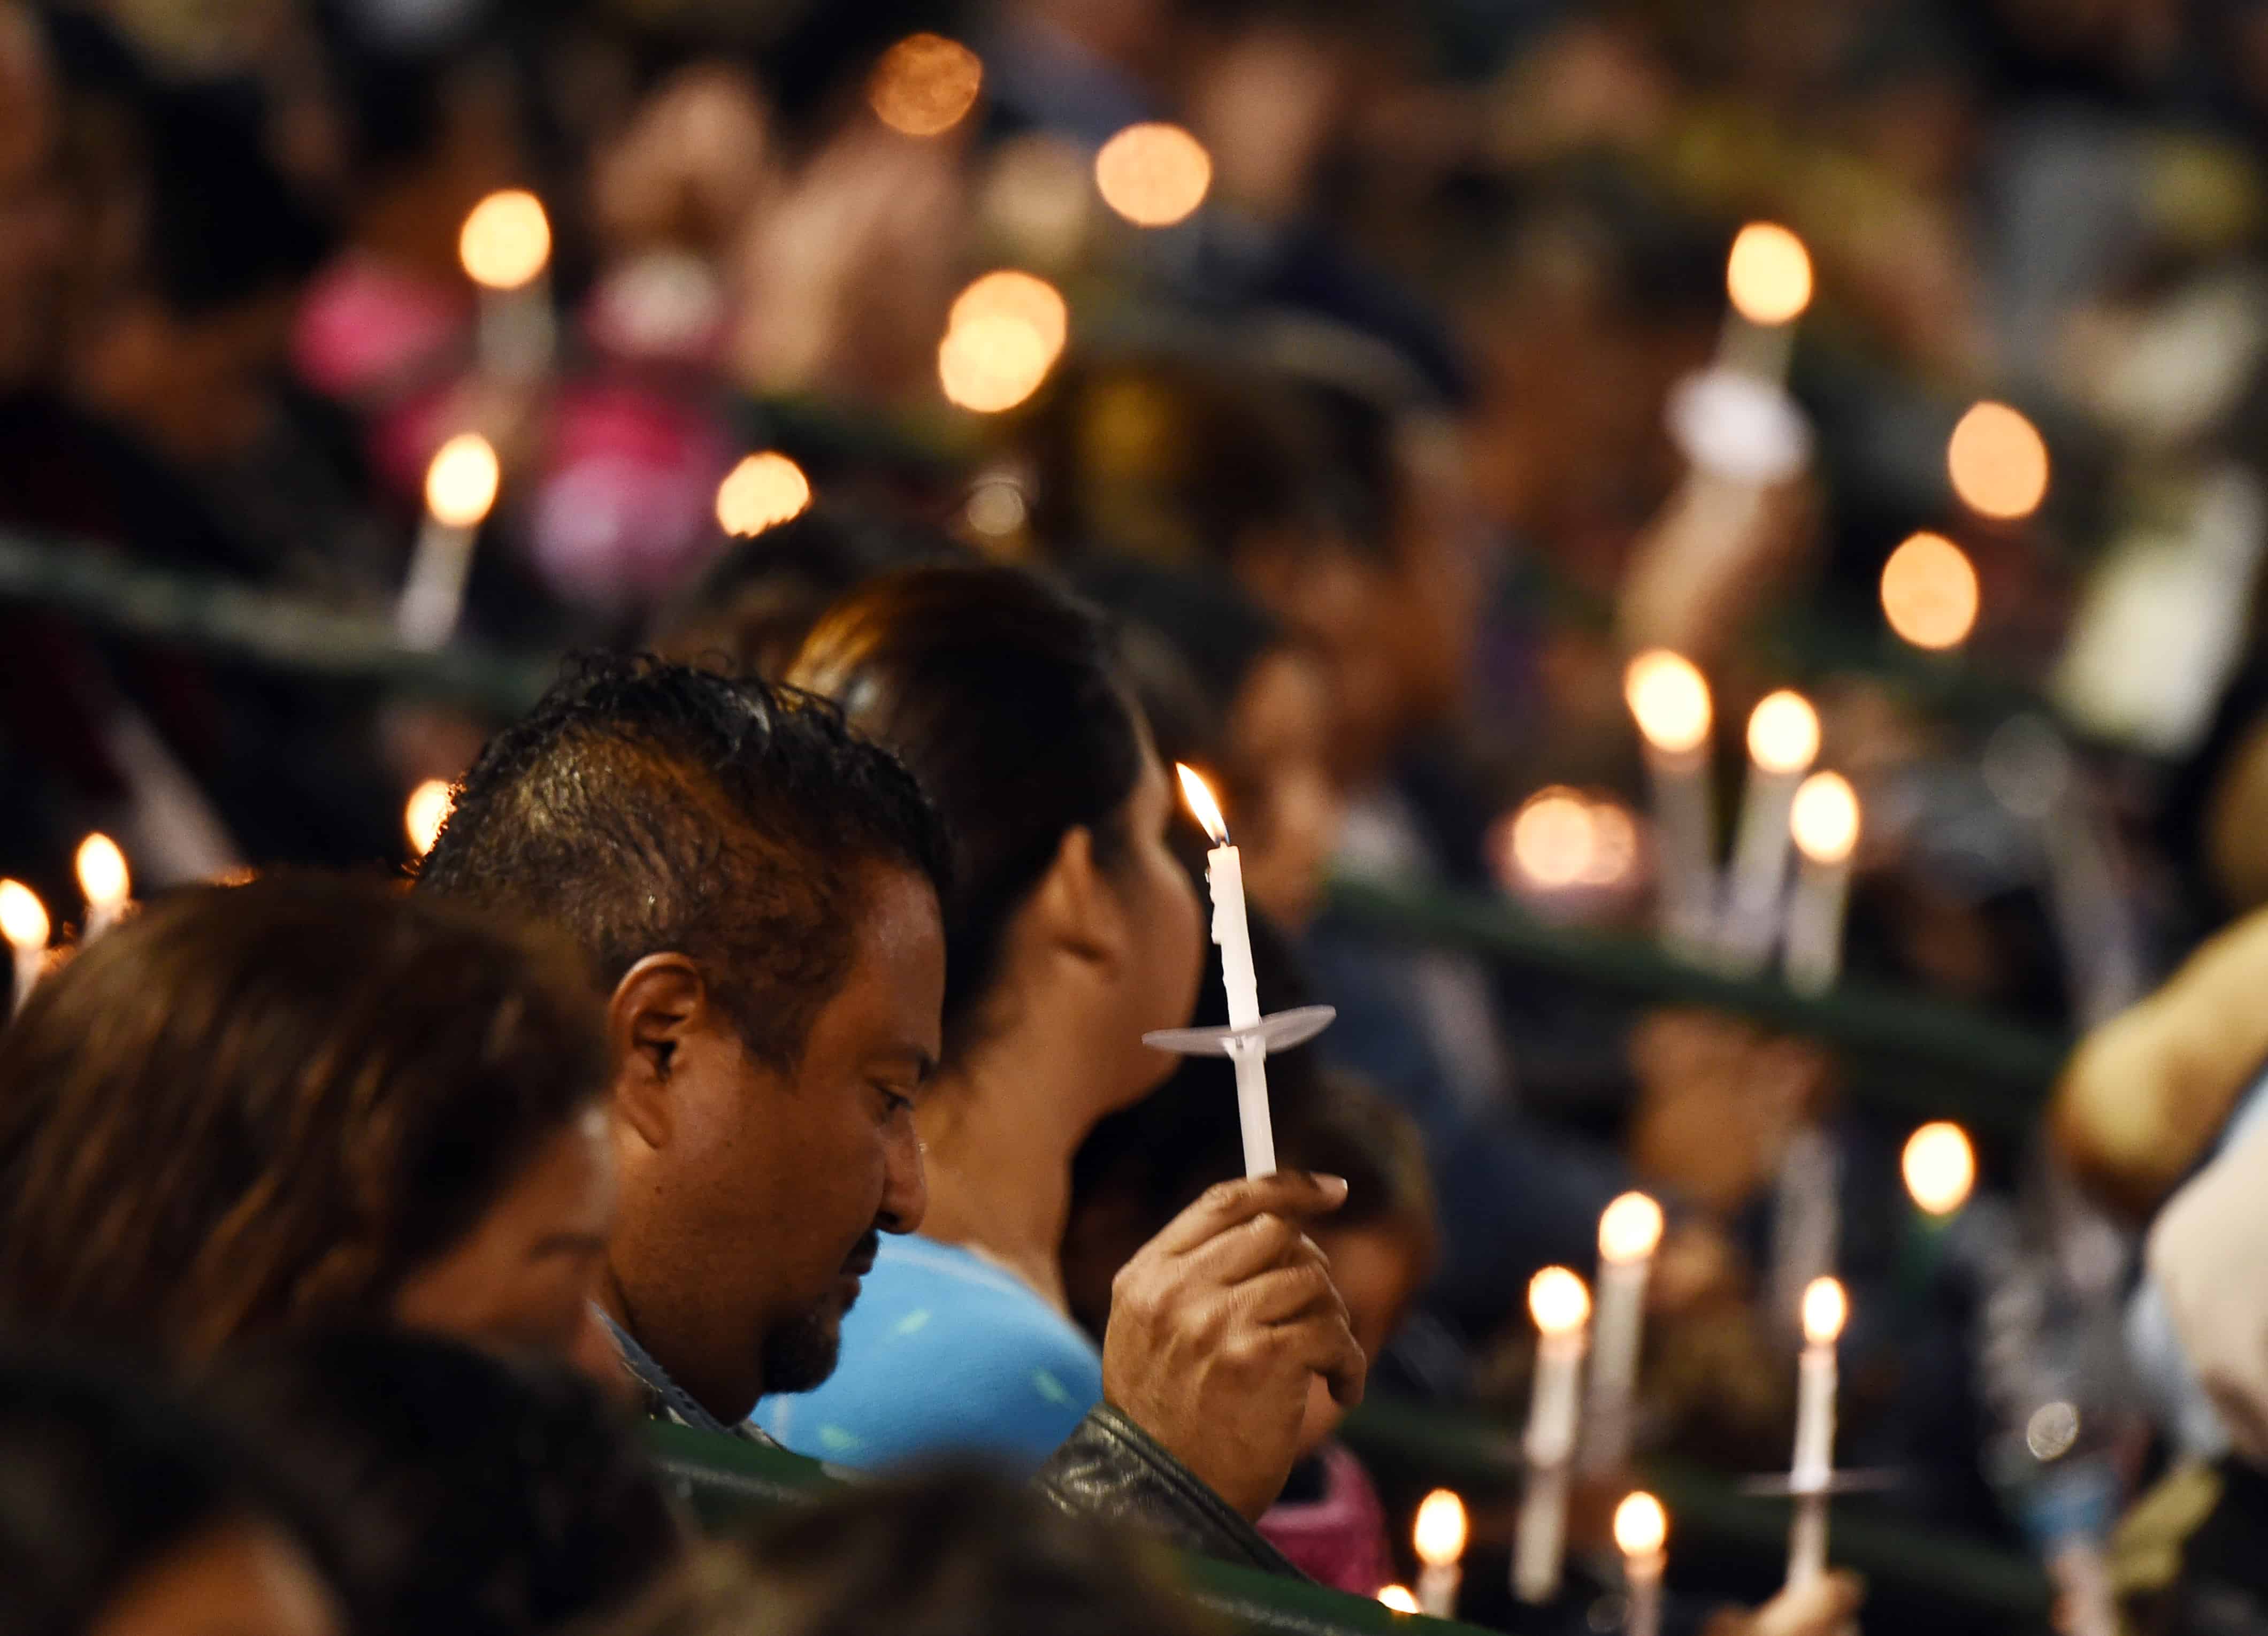 A candlelight vigil for San Bernardino shooting